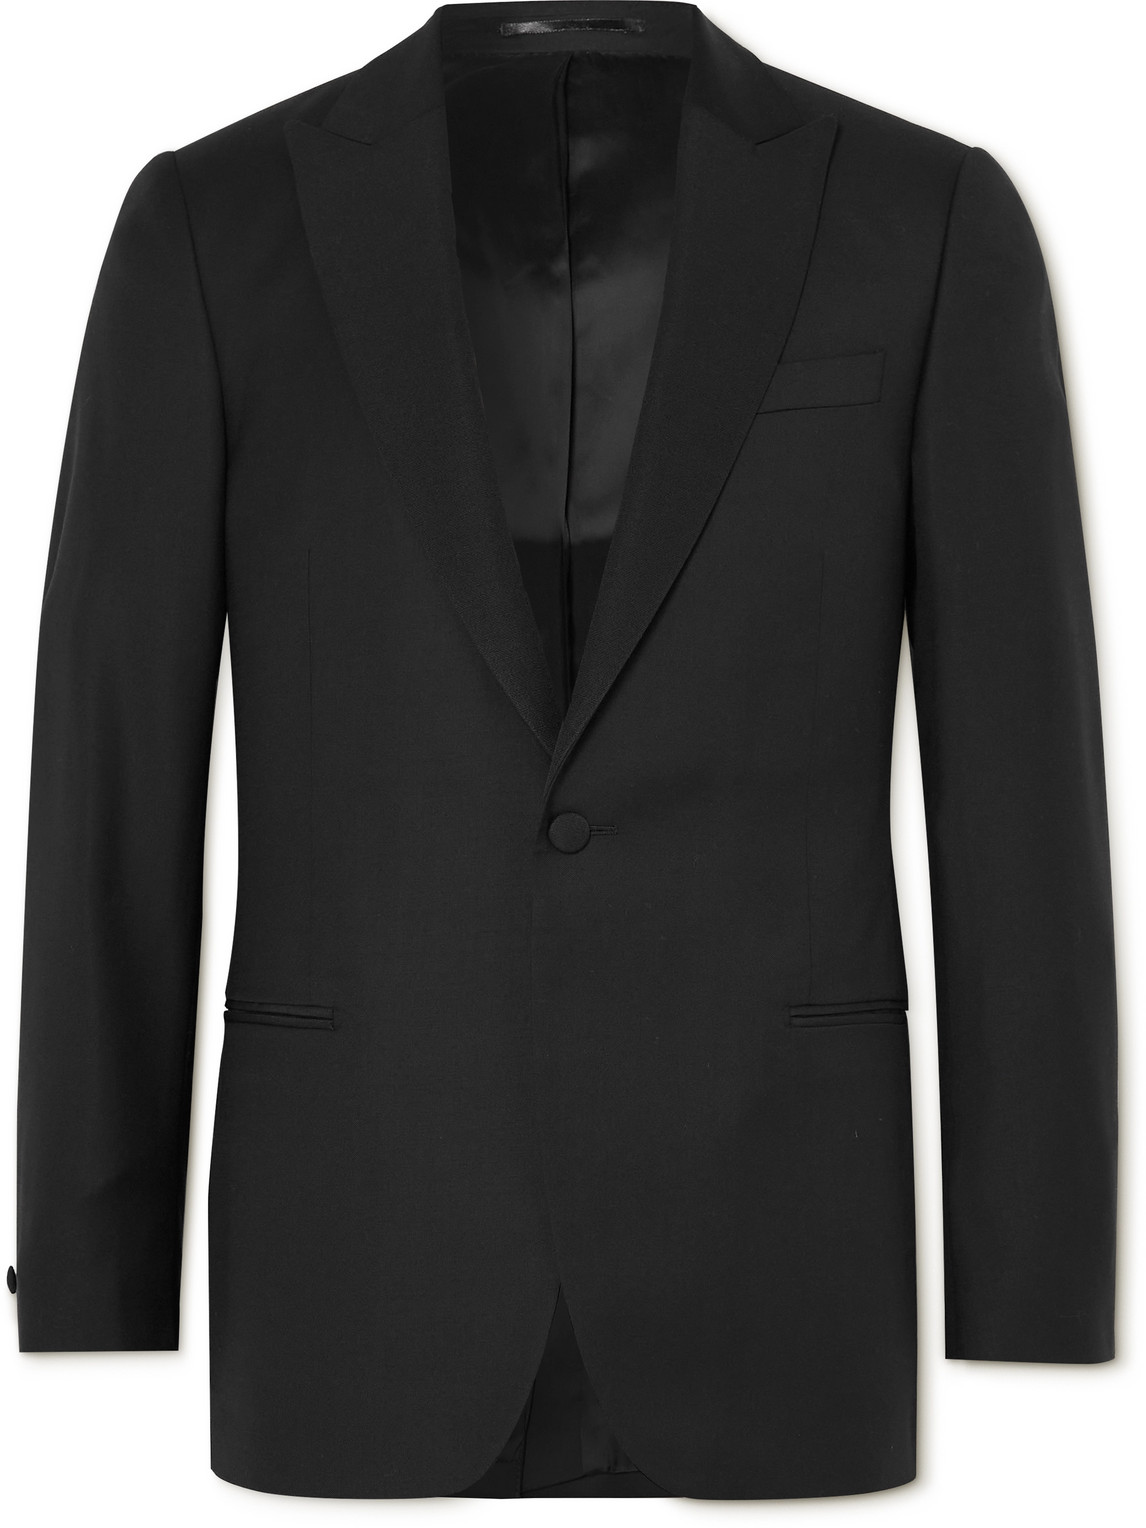 Mr P Wool Tuxedo Jacket In Black